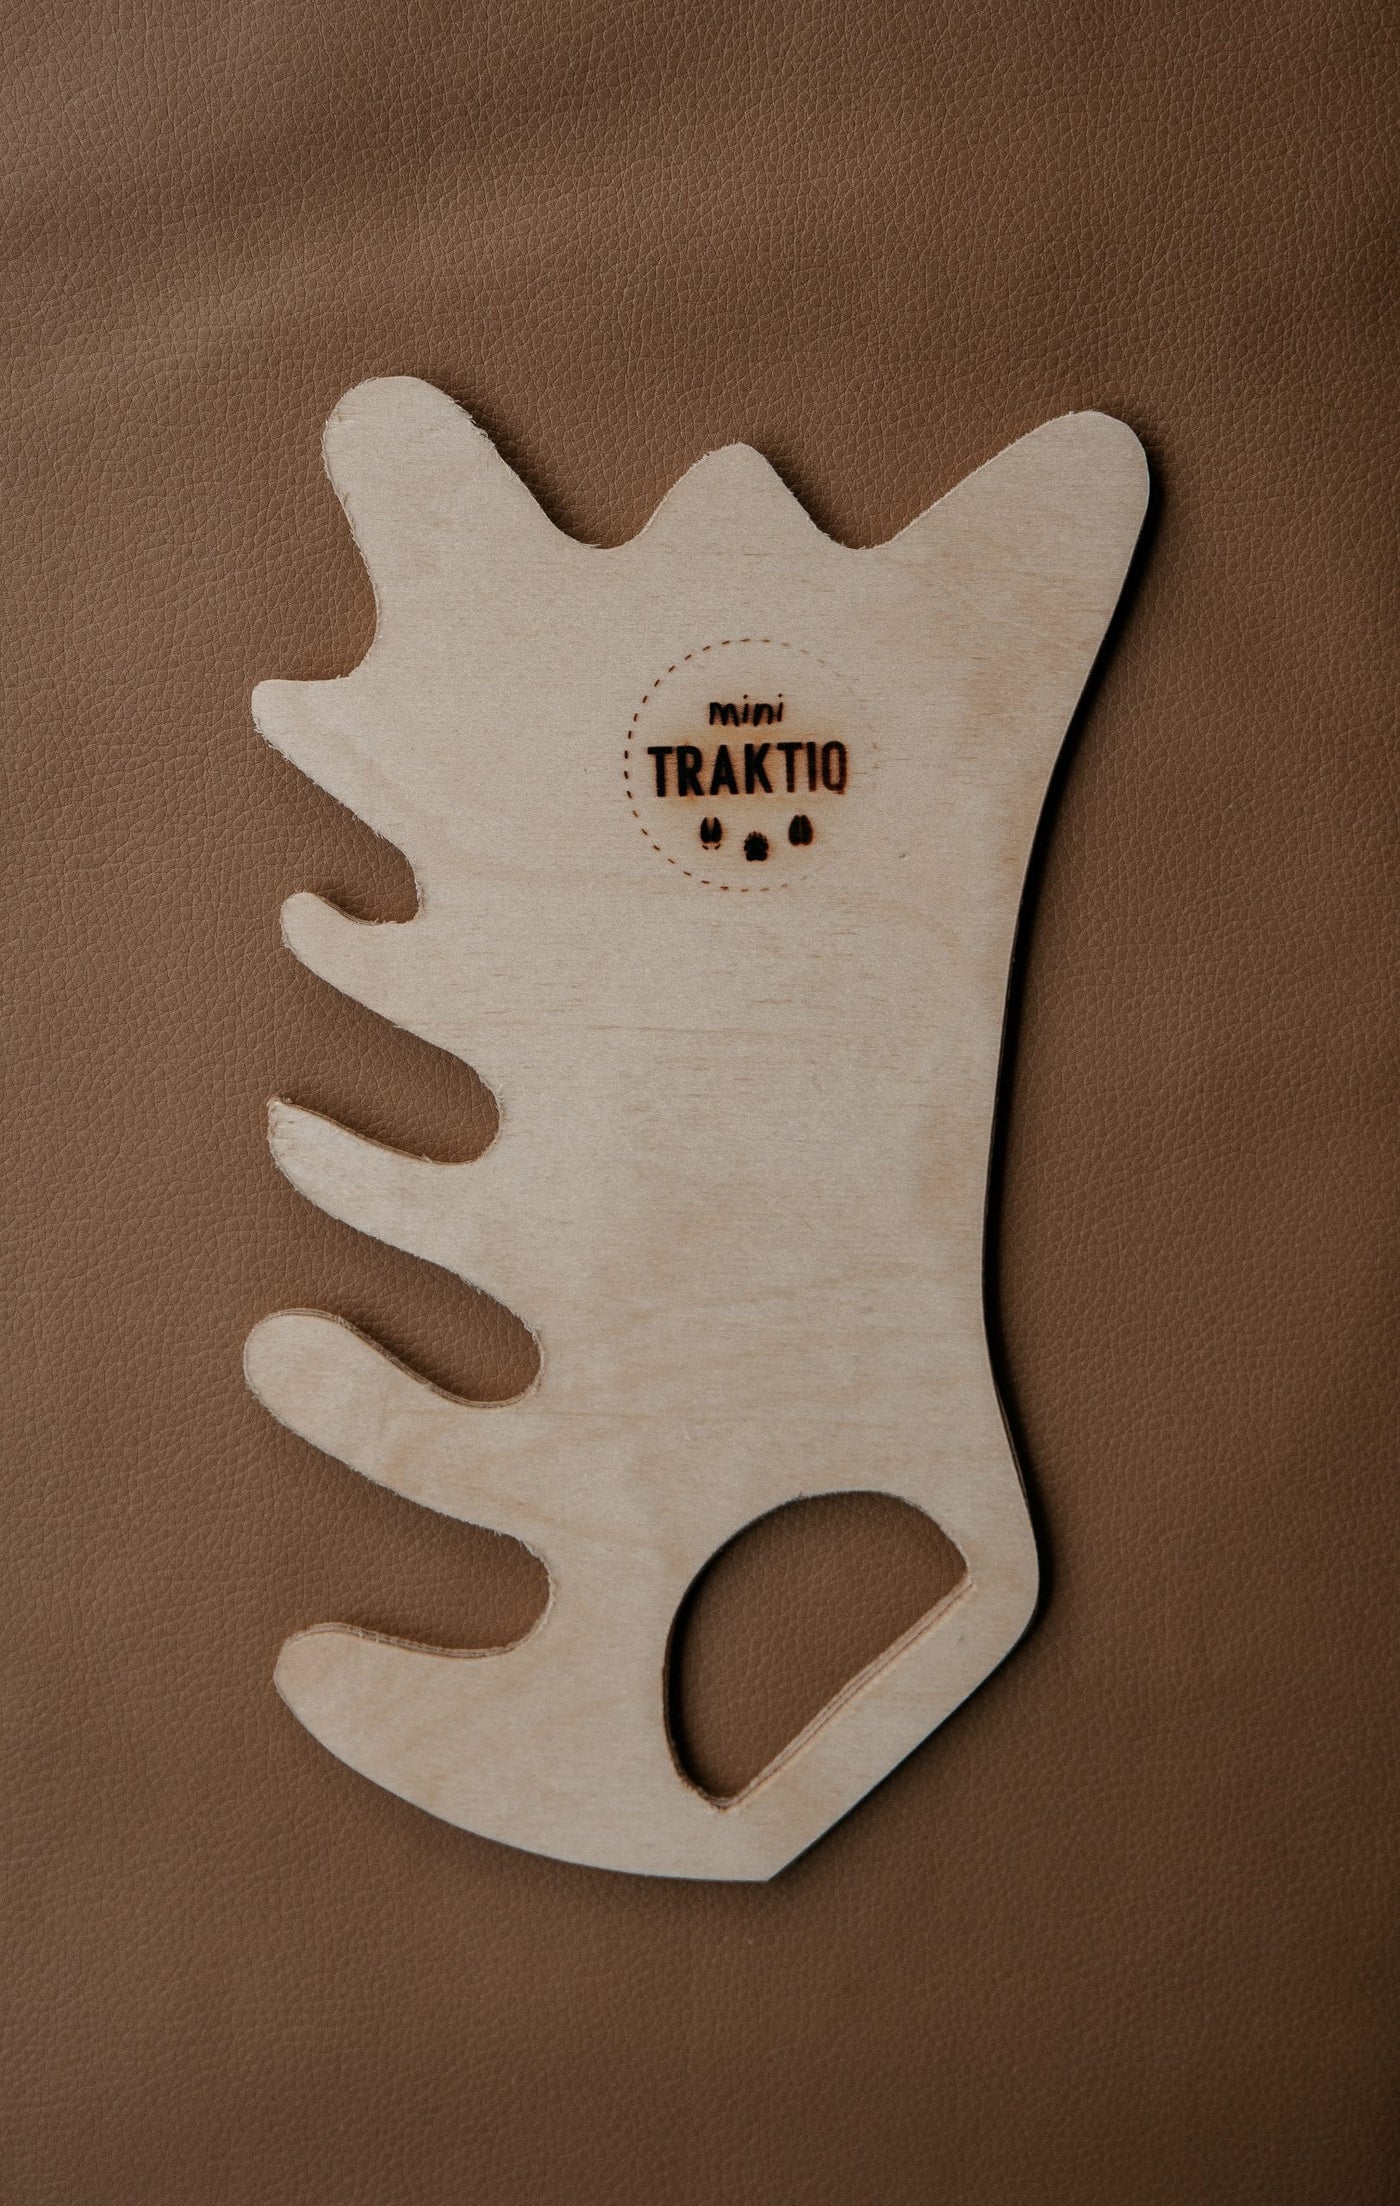 Kit de chasse pour enfant "Mini Traktiq"